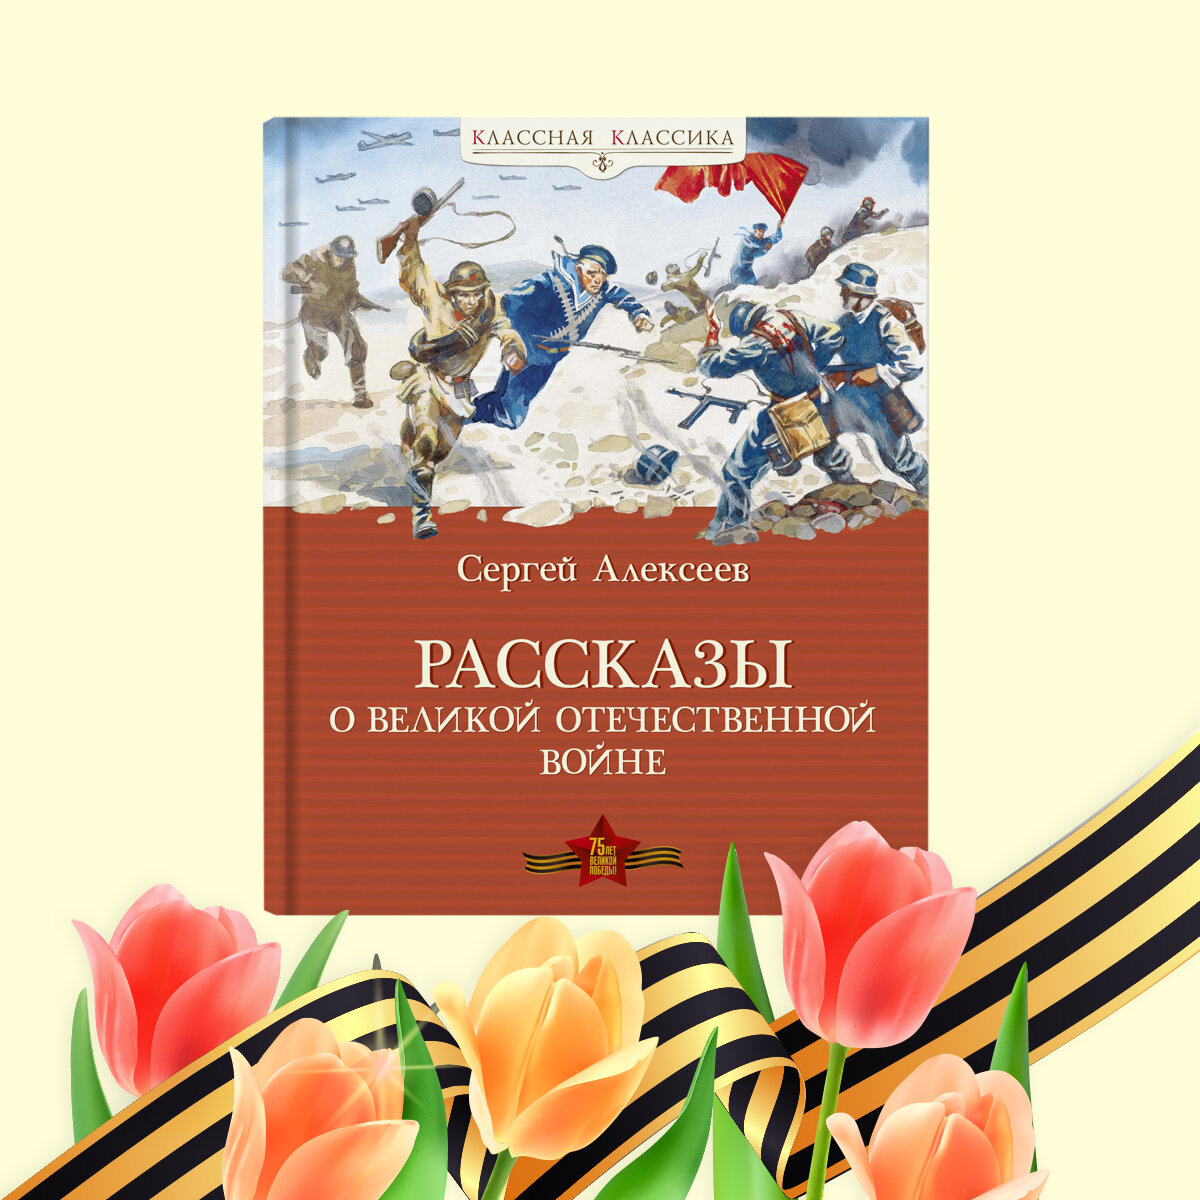 Книги, чтобы рассказать детям о Великой Отечественной войне